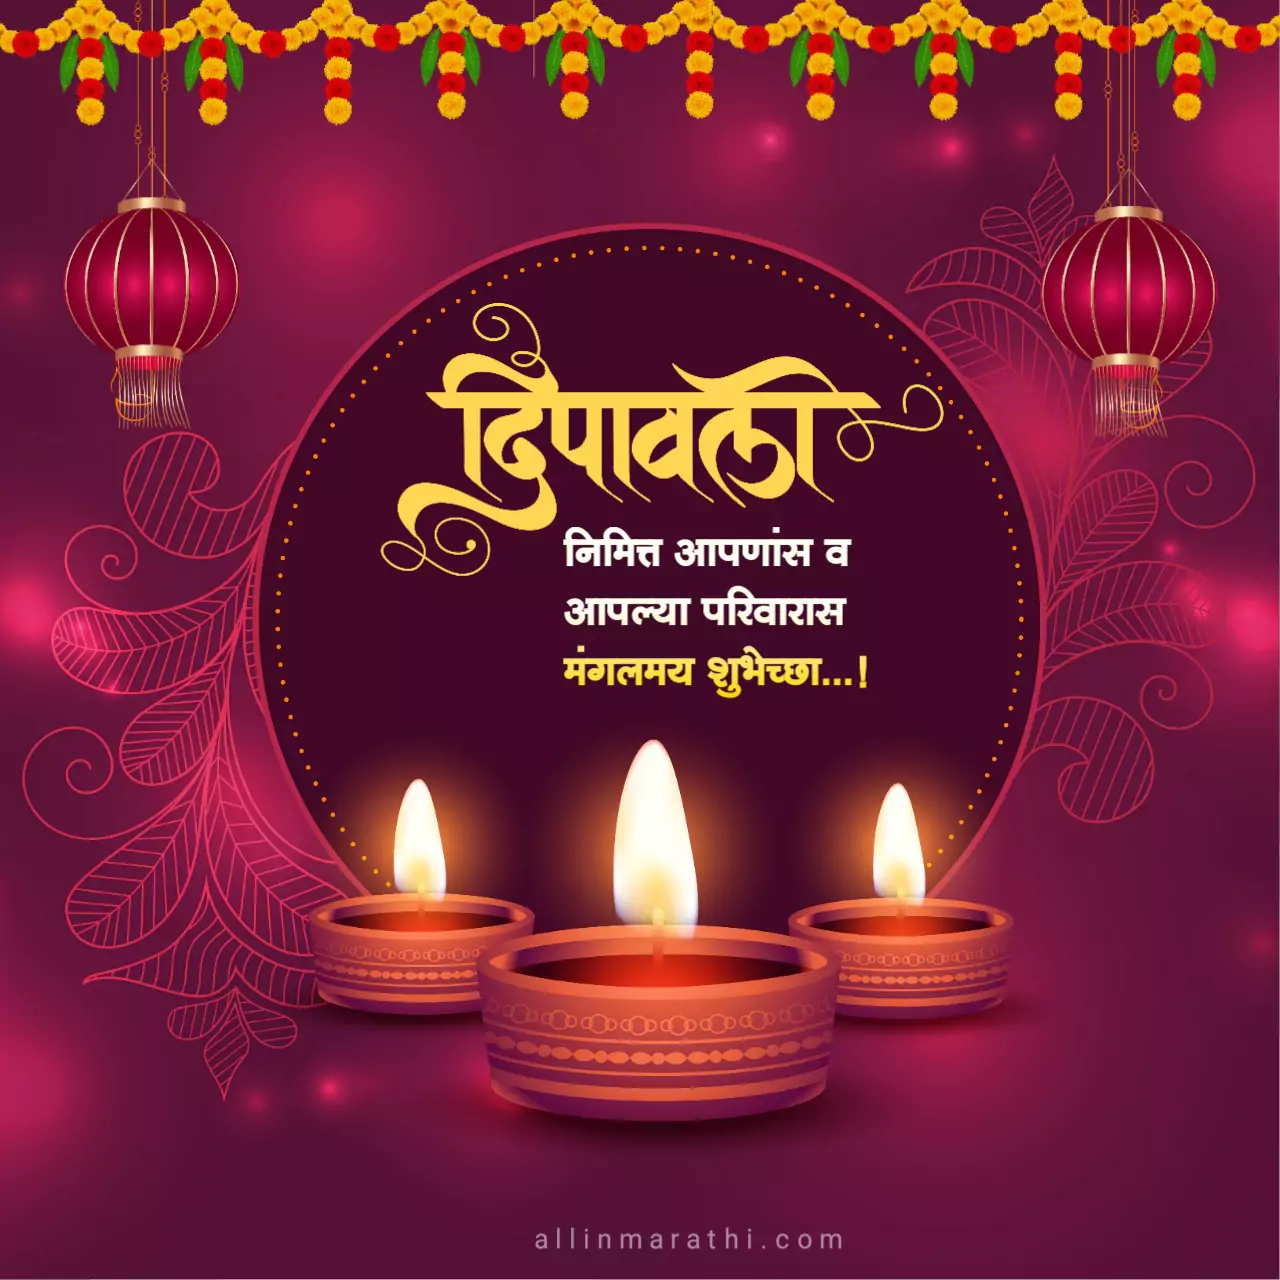 Diwali greetings in marathi